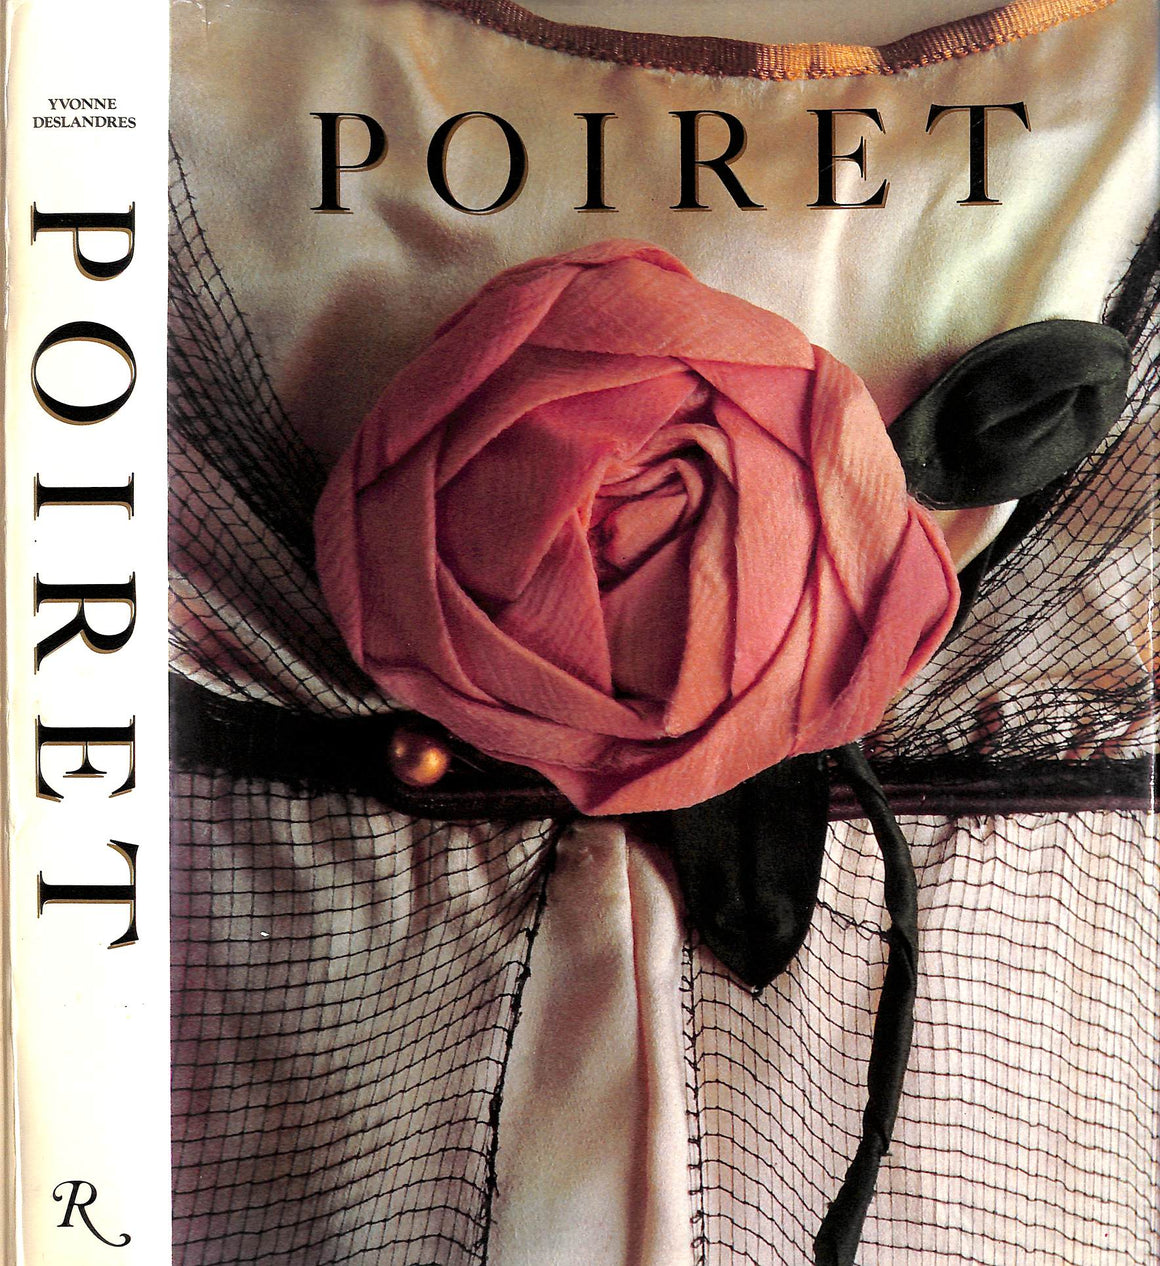 "Poiret: Paul Poiret 1879-1944" DESLANDRES, Yvonne